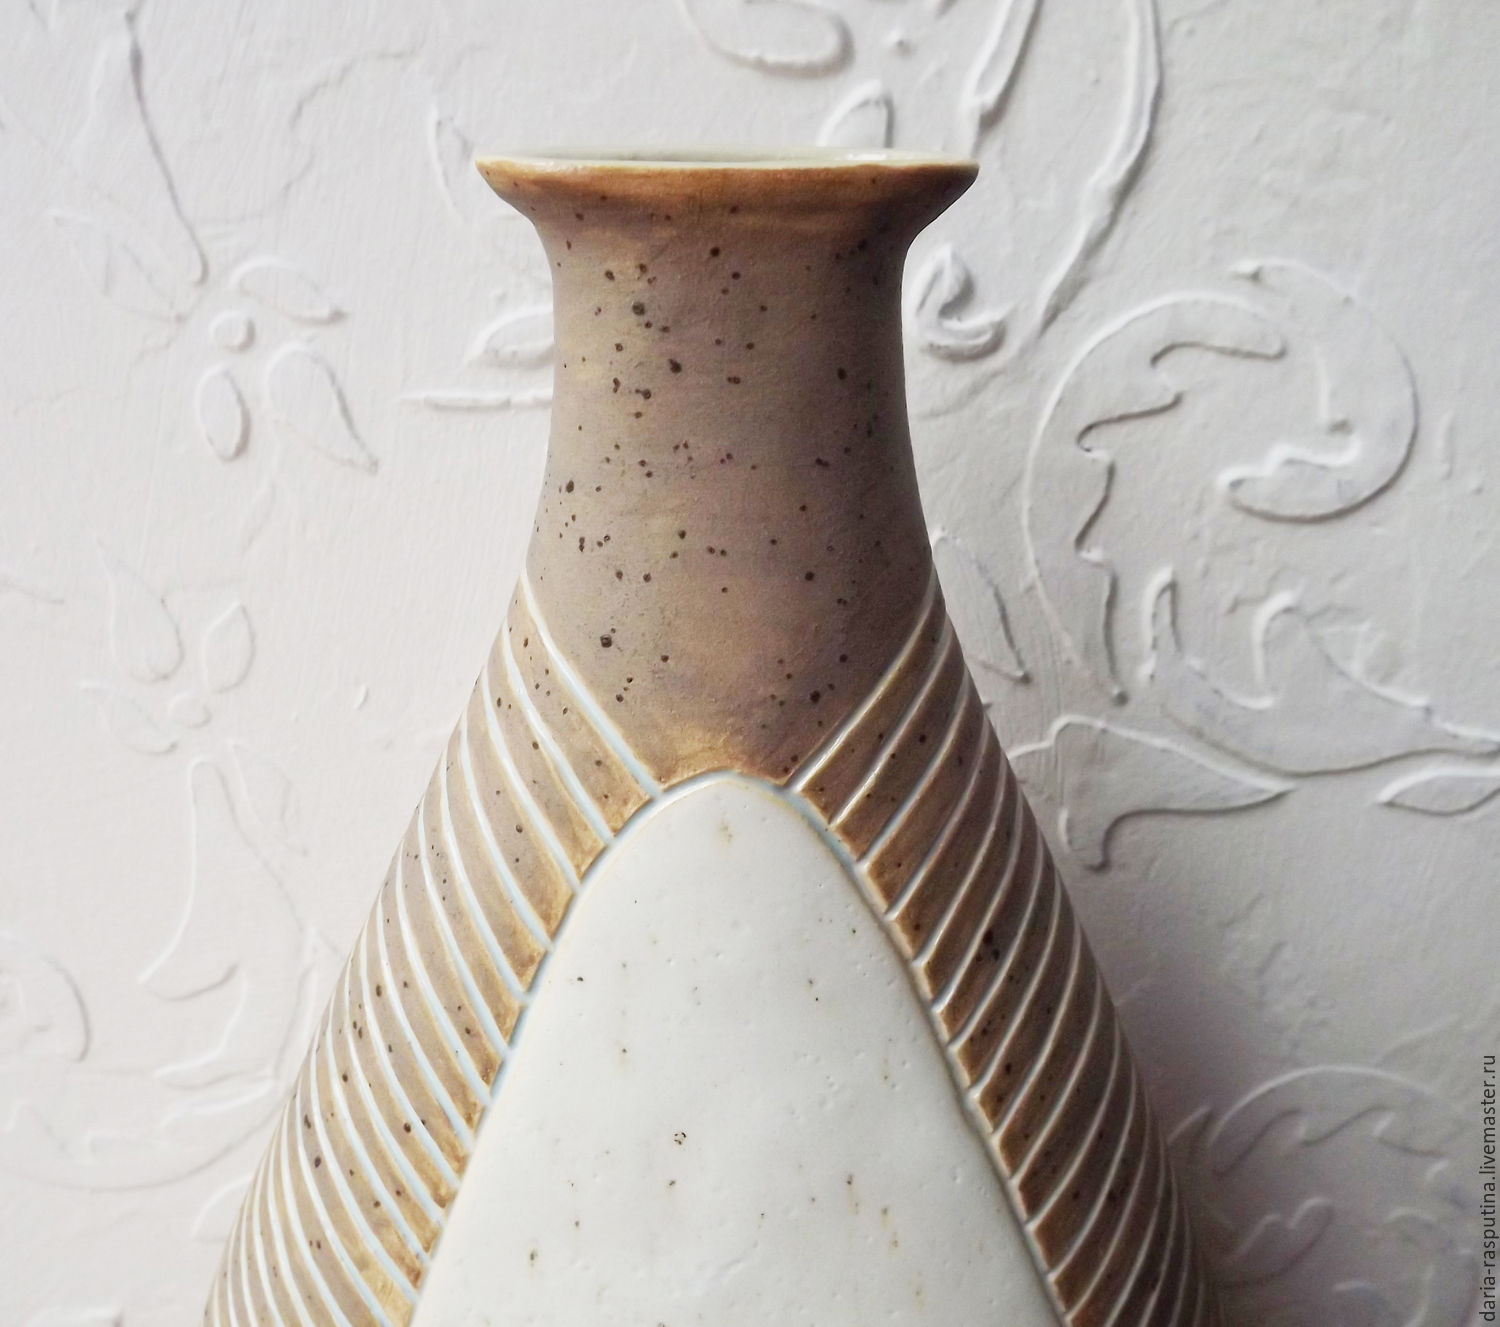 Комплект керамических ваз